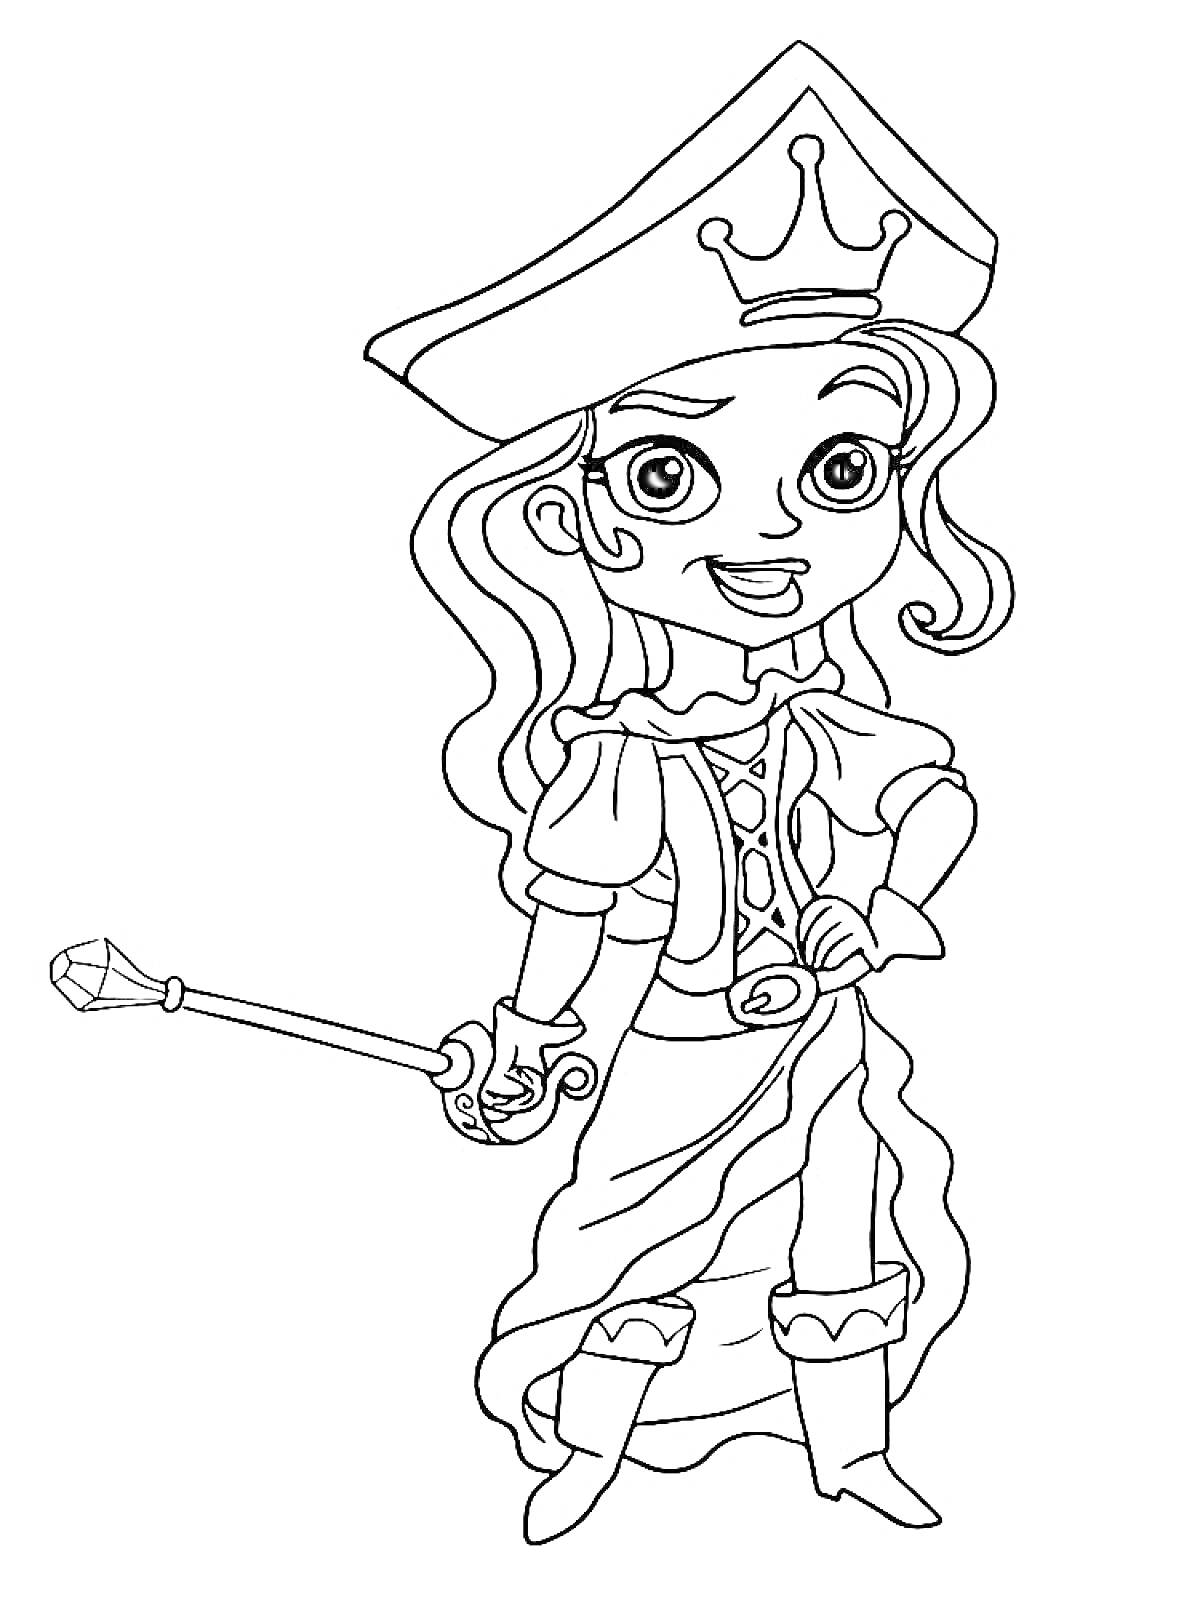 Раскраска Девочка-пират в шляпе с короной, с длинными волосами в платье и сапогах, держащая волшебный жезл